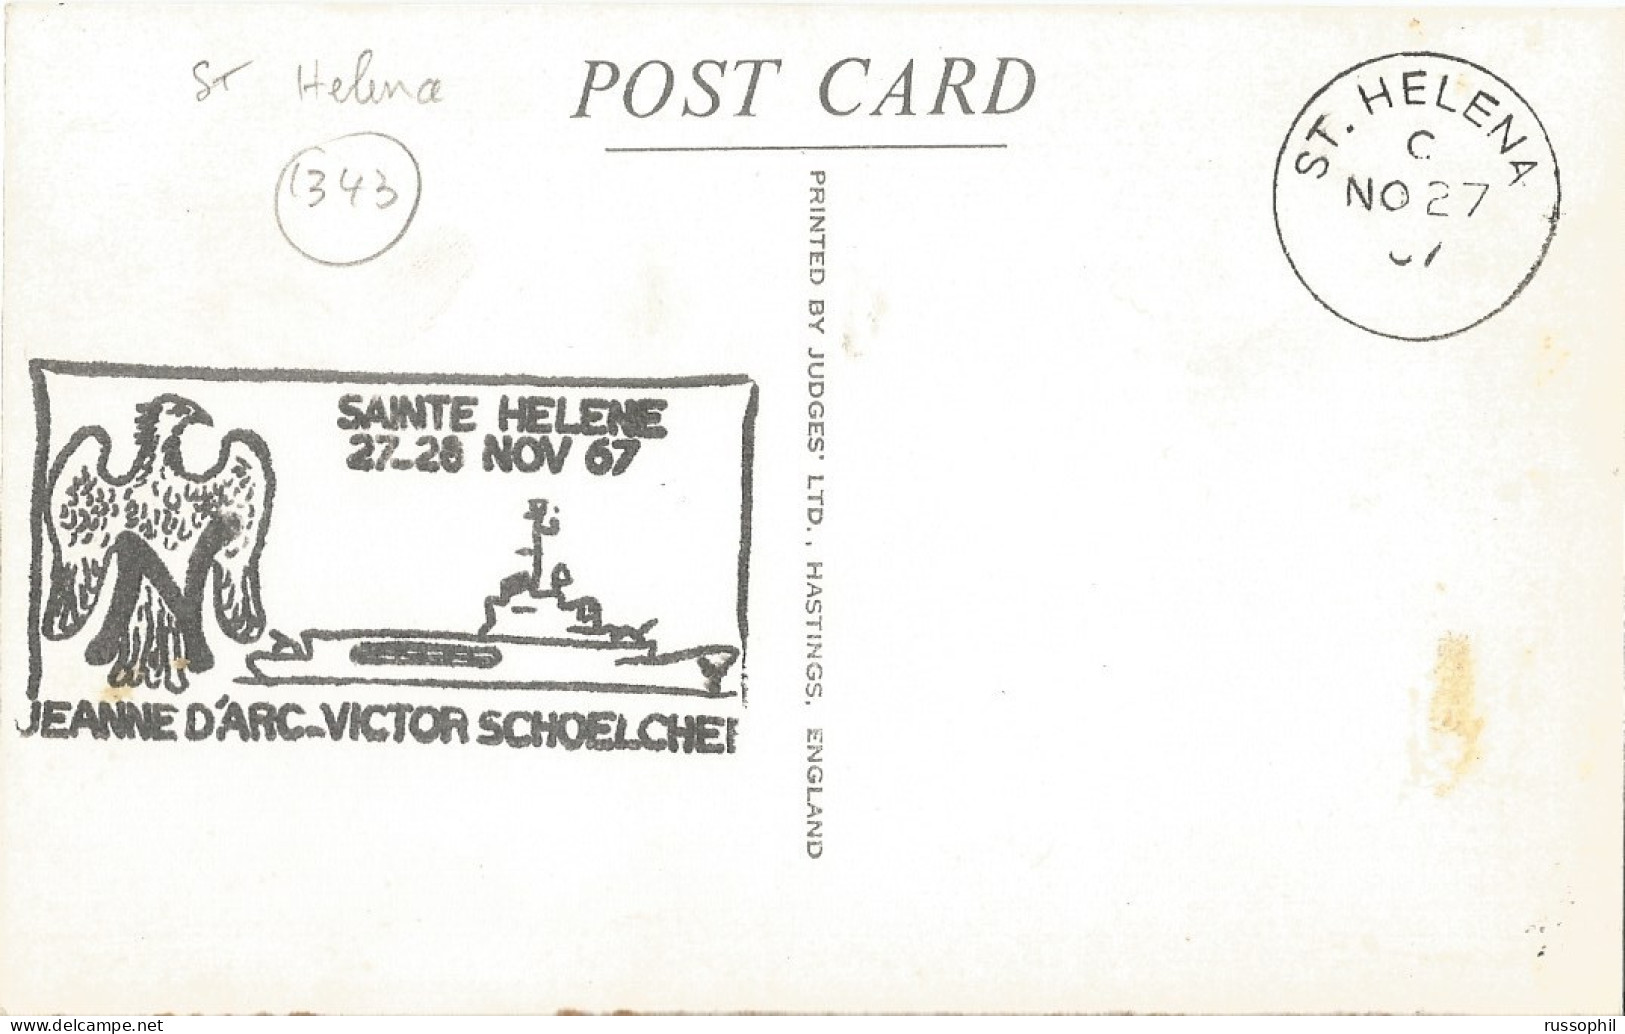 ST HELENA - JACOB'S LADDER, 699 STEPS - PUB. JUDGES LTD, HASTINGSREF REF #2  - FRENCH WAR SHIP " JEANNE D'ARC " - 1967 - Santa Helena